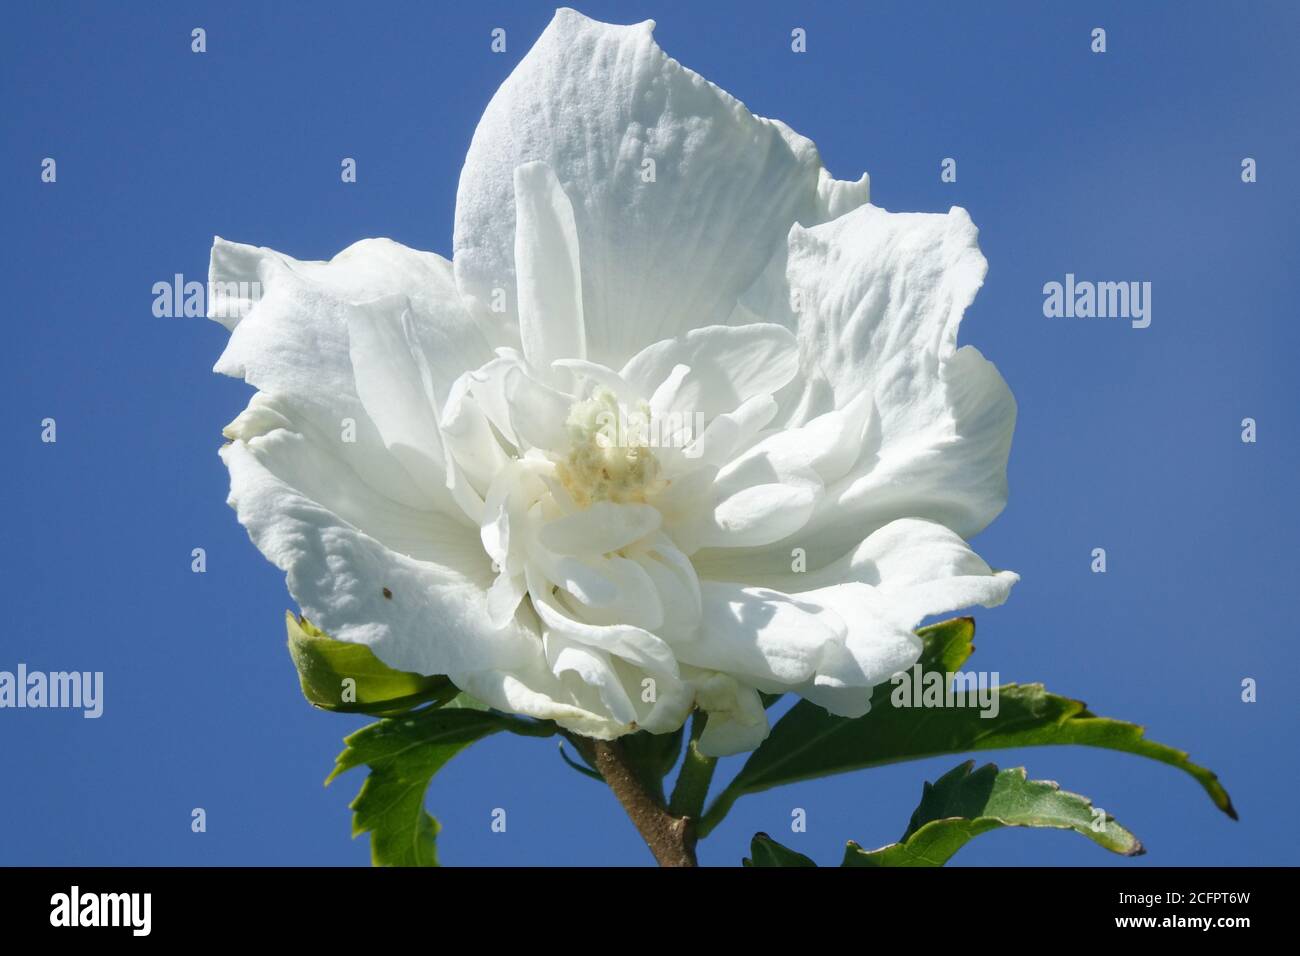 Hibiscus Totus Albus, white flower Stock Photo